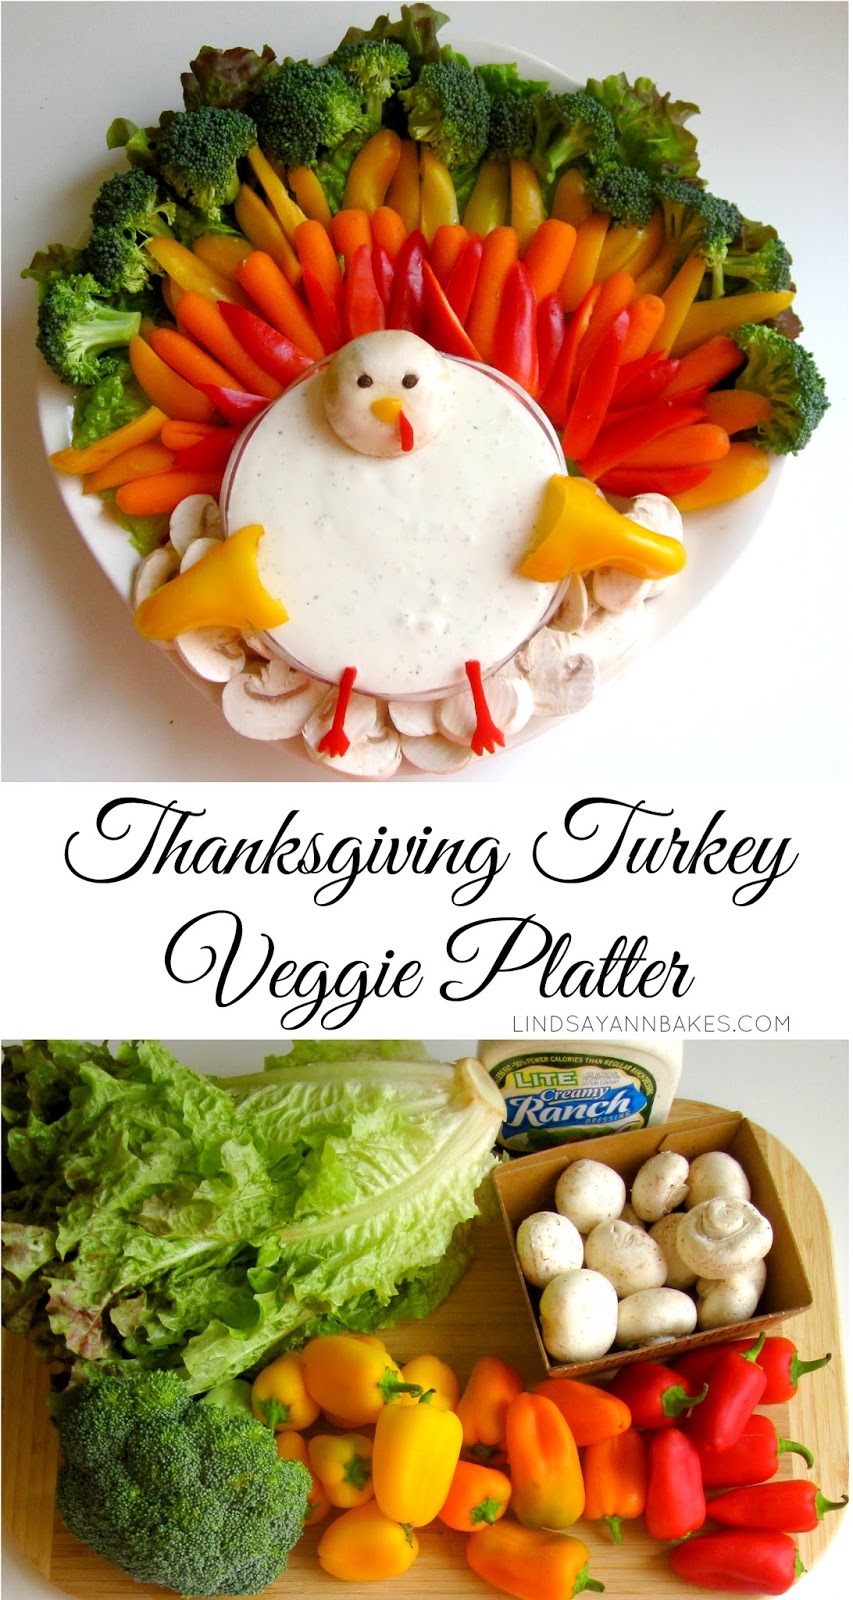 Thanksgiving Turkey Veggie Platter - The Lindsay Ann